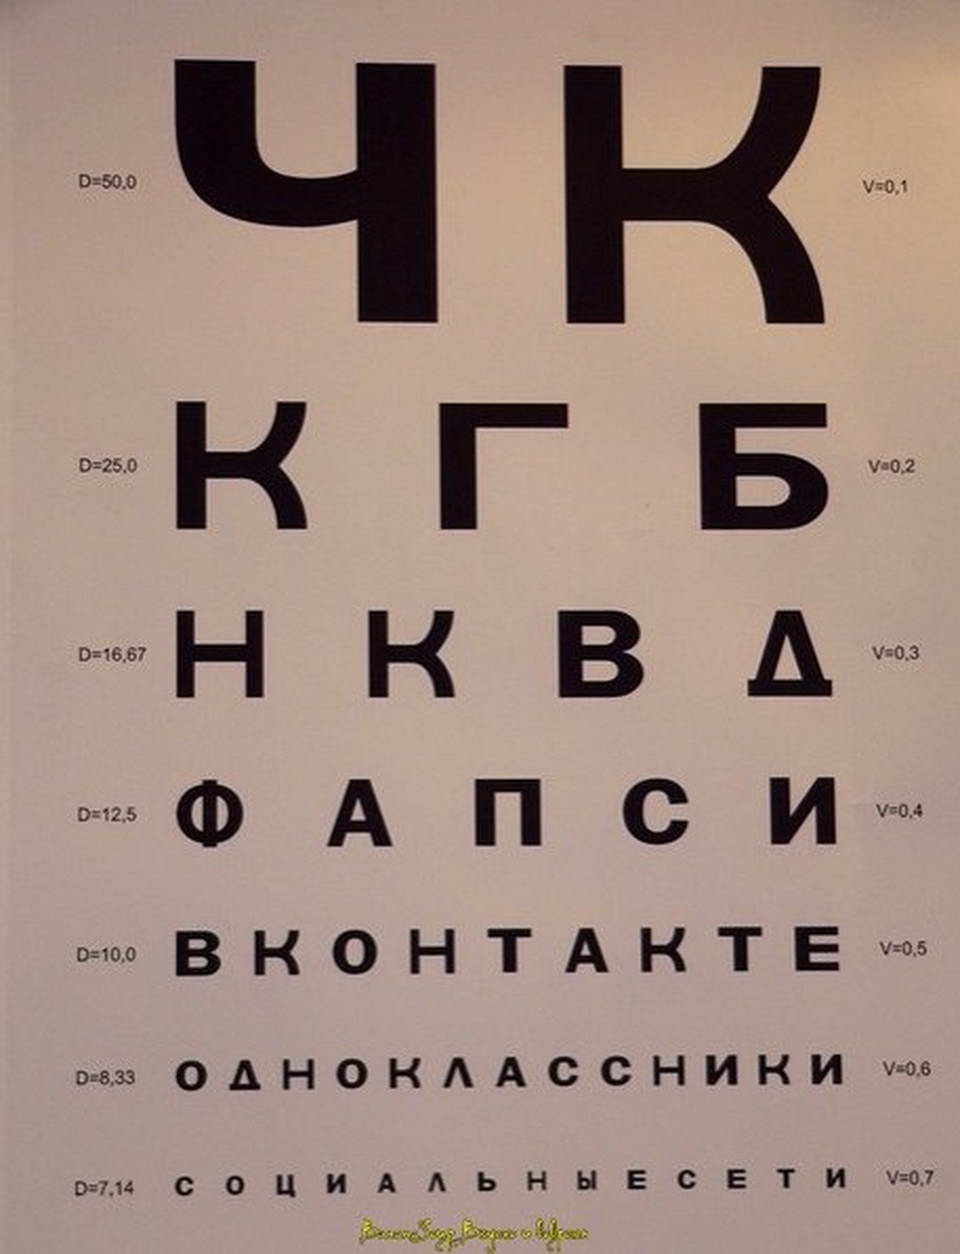 Глаза проверить зрение. Таблица алфавита у окулиста. Таблица Сивцева а3. Таблица в кабинете окулиста для проверки зрения. Таблица офтальмолога Шираз.